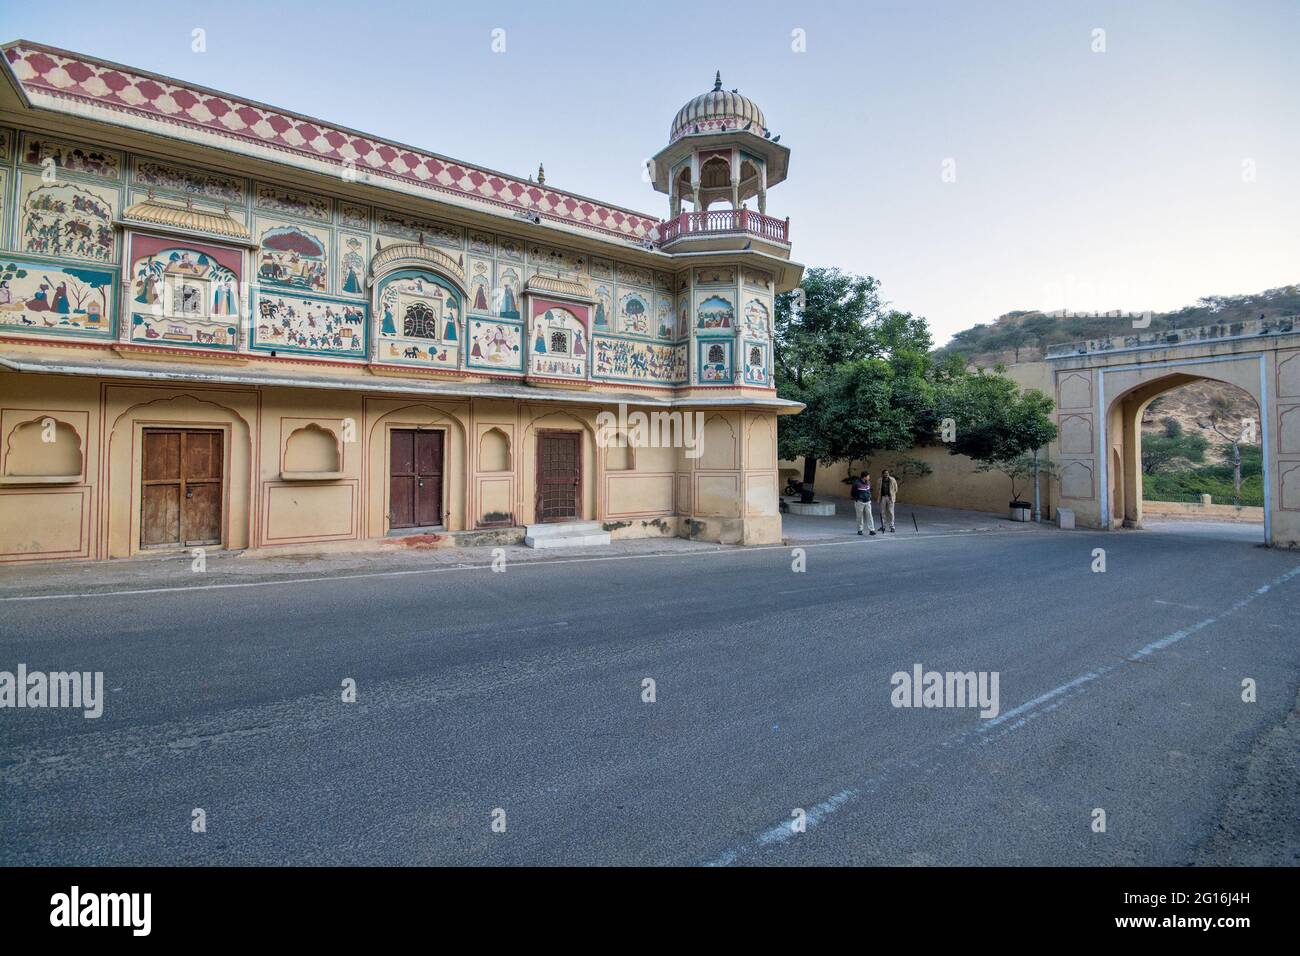 Sisodia Rani Garden and Palace ist ein Palastgarten 6 Kilometer von Jaipur Stadt in Rajasthan Staat in Indien. Es wurde von Maharaja Sawai J Singh gebaut. Stockfoto